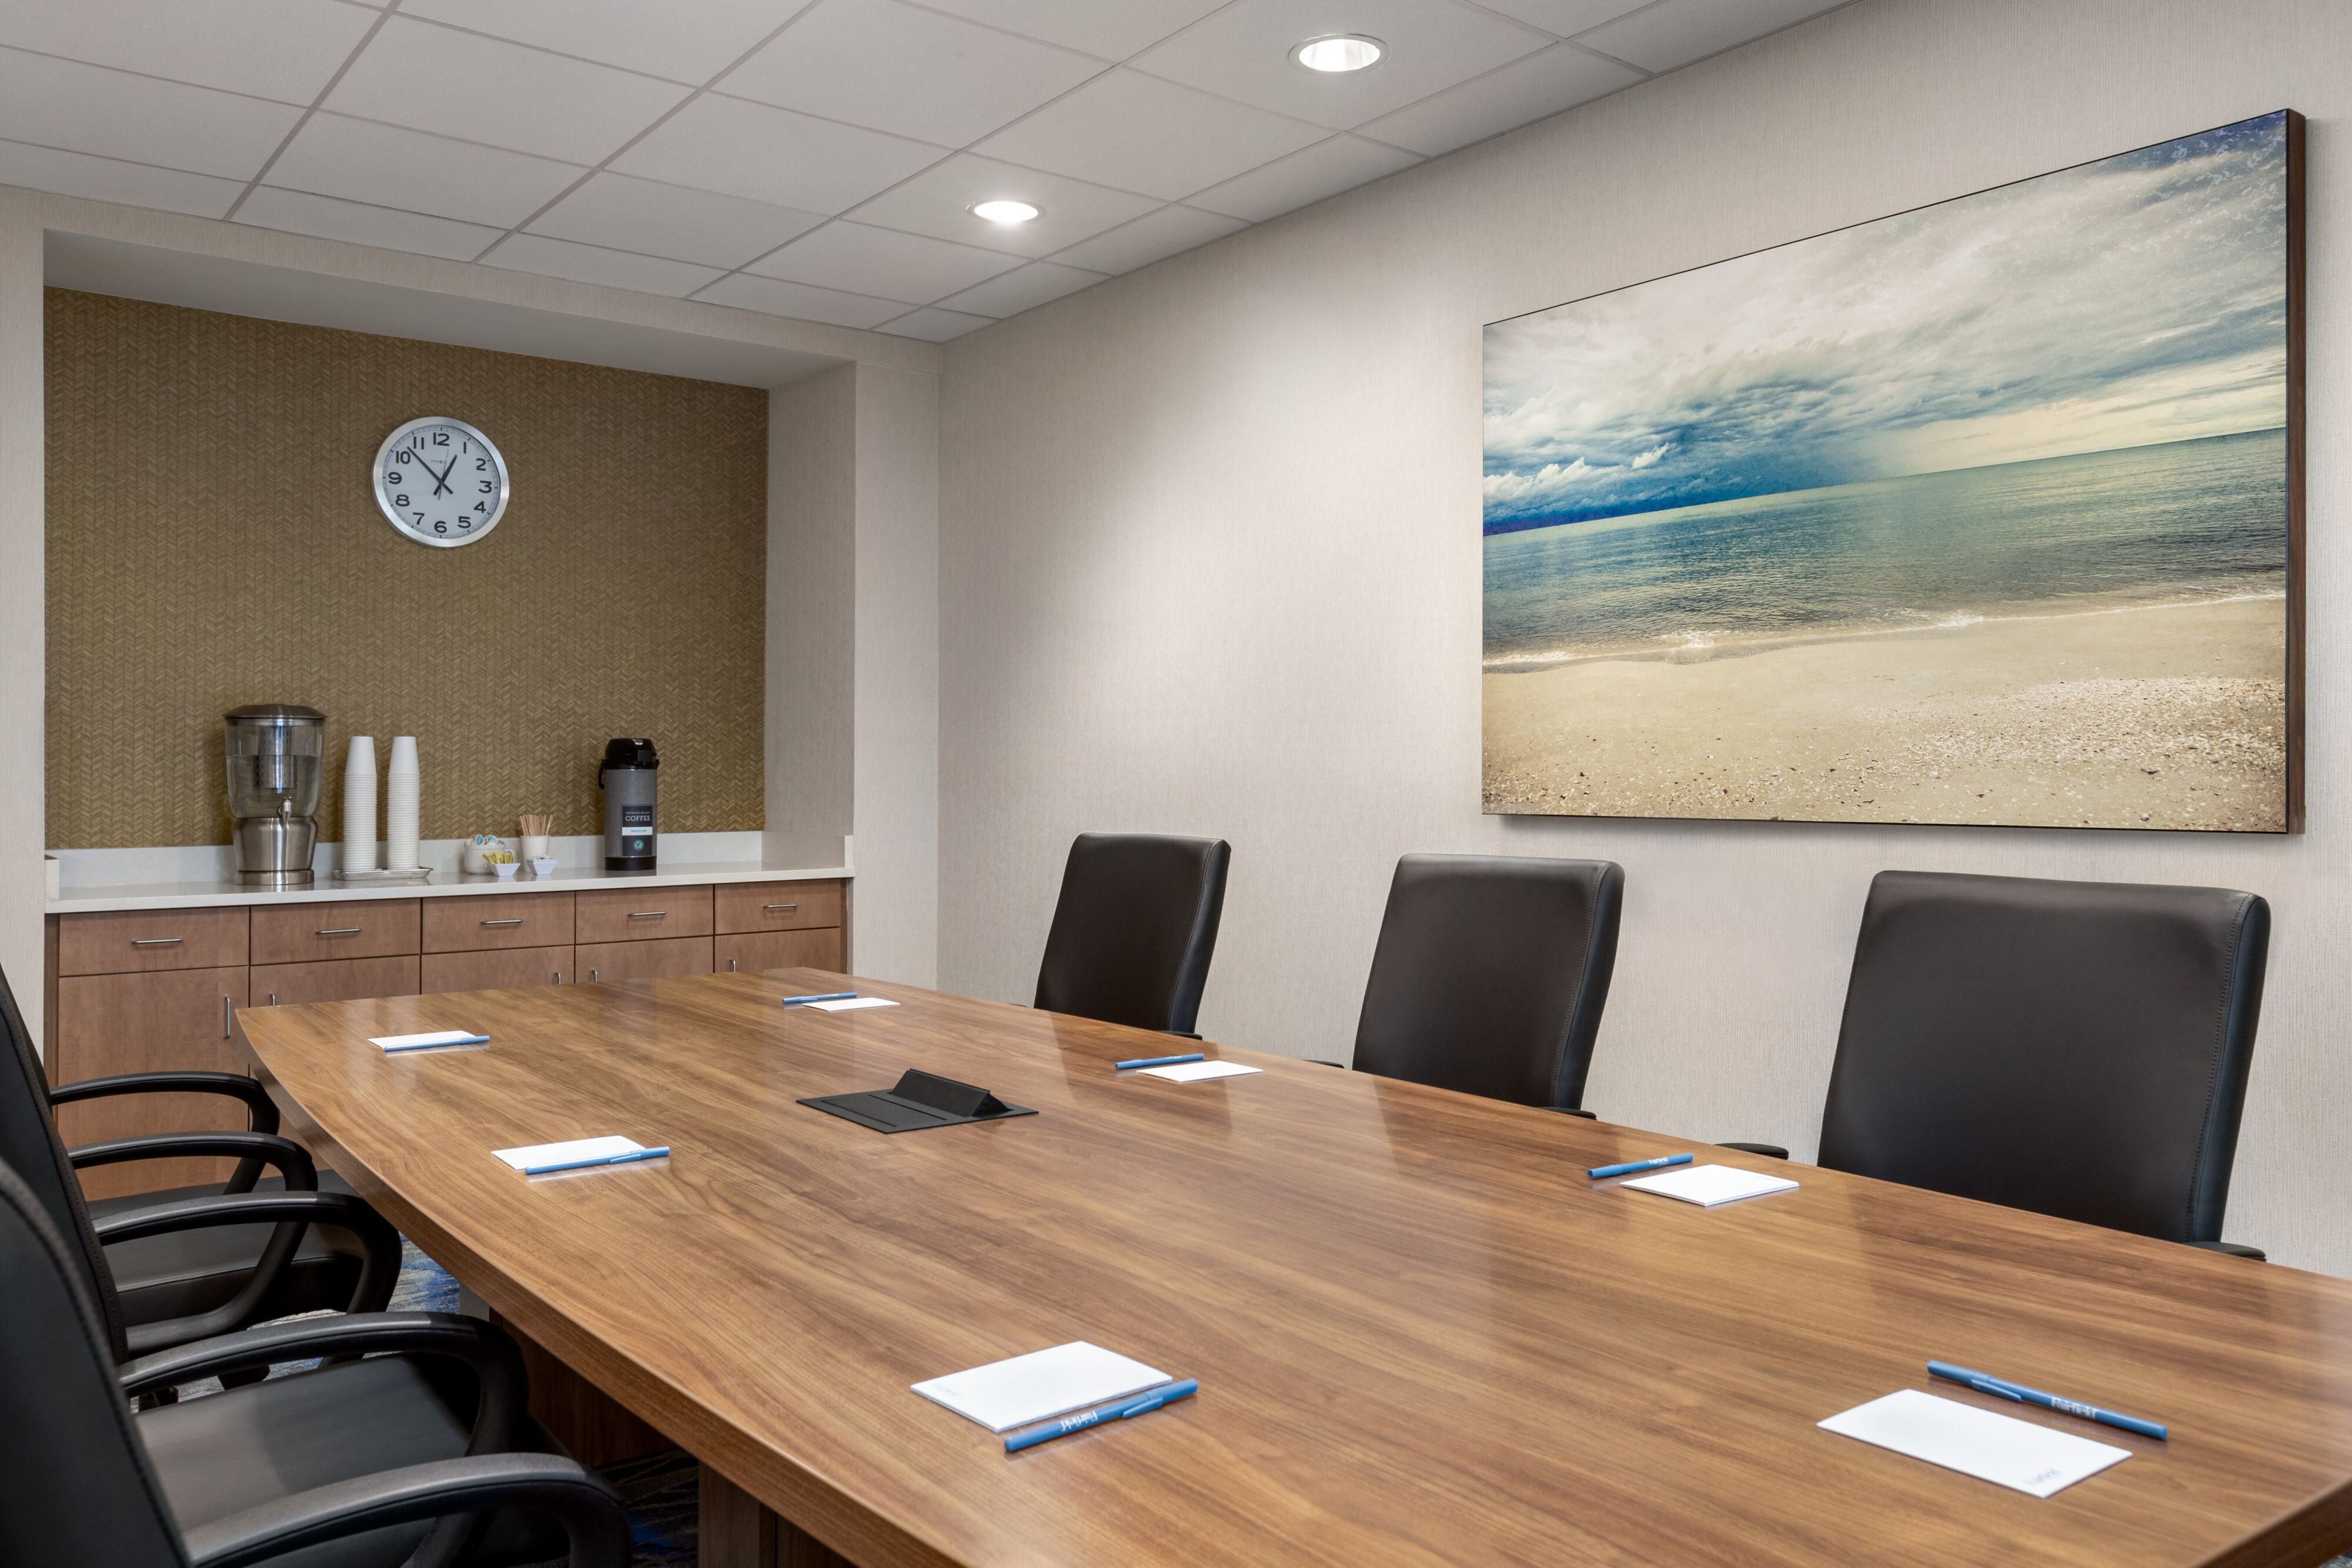 Edison Boardroom - Conference Room